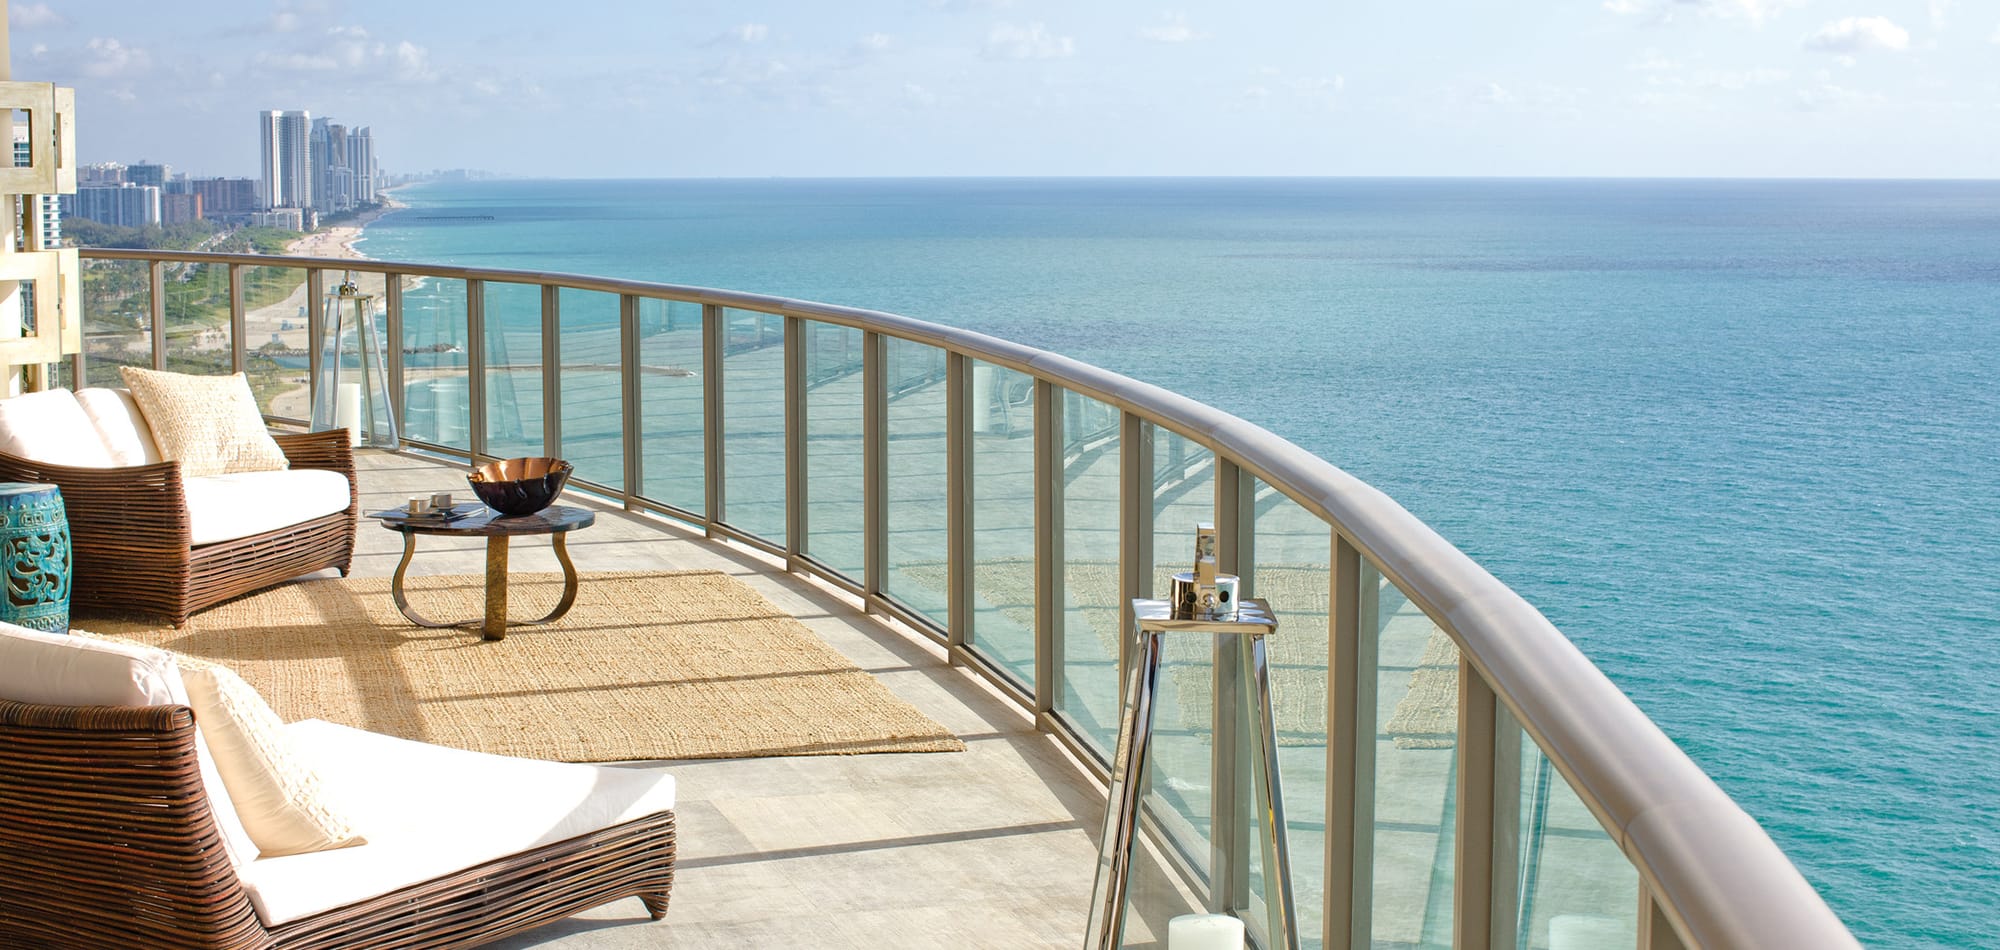 A deck overlooking ocean